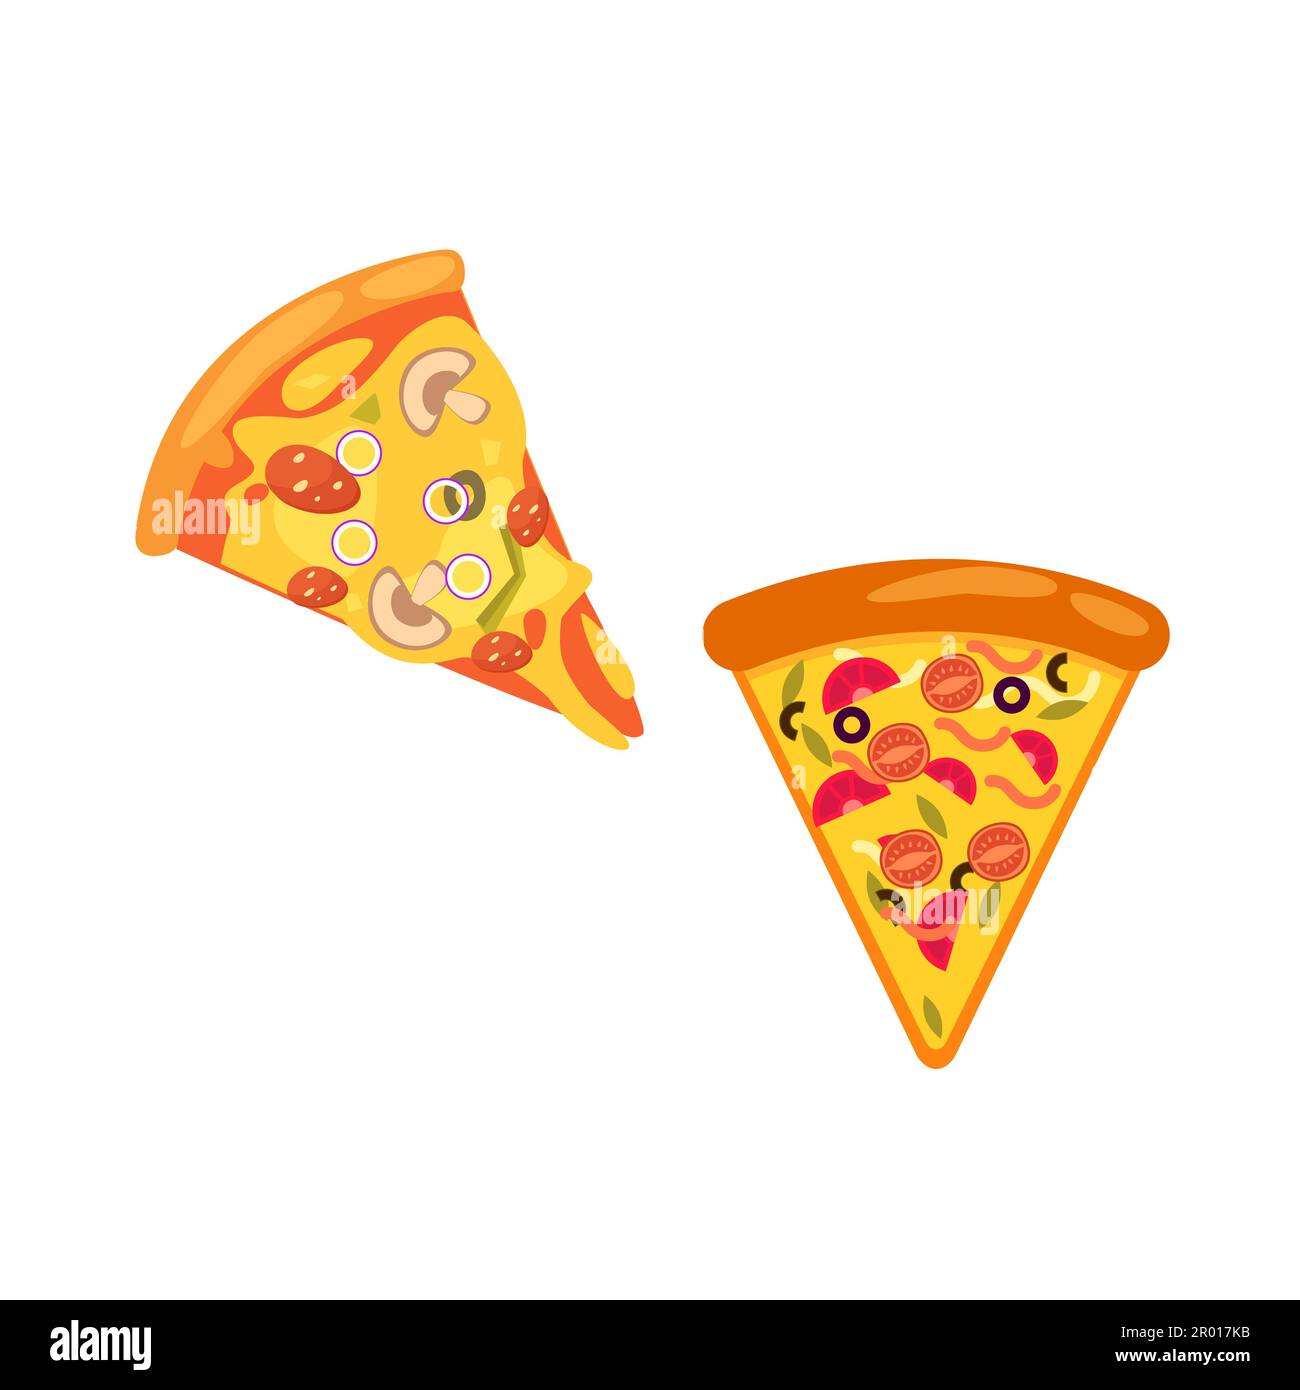 pepperoni pizza slice clip art